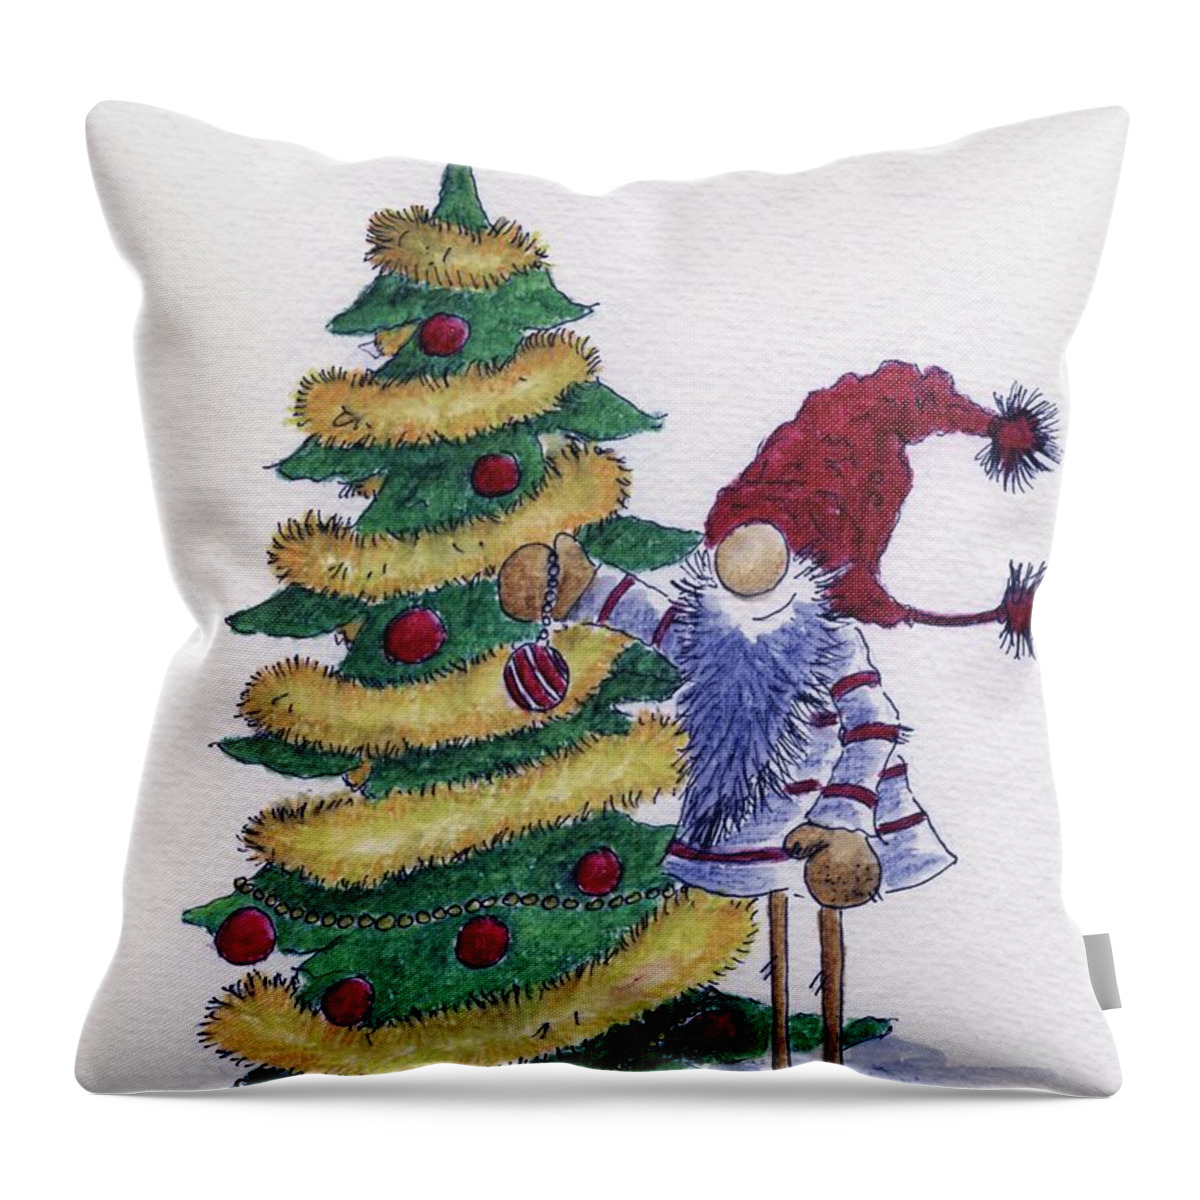 Christmas Tree Throw Pillow featuring the painting Decorating Xmas tree by Eva Ason